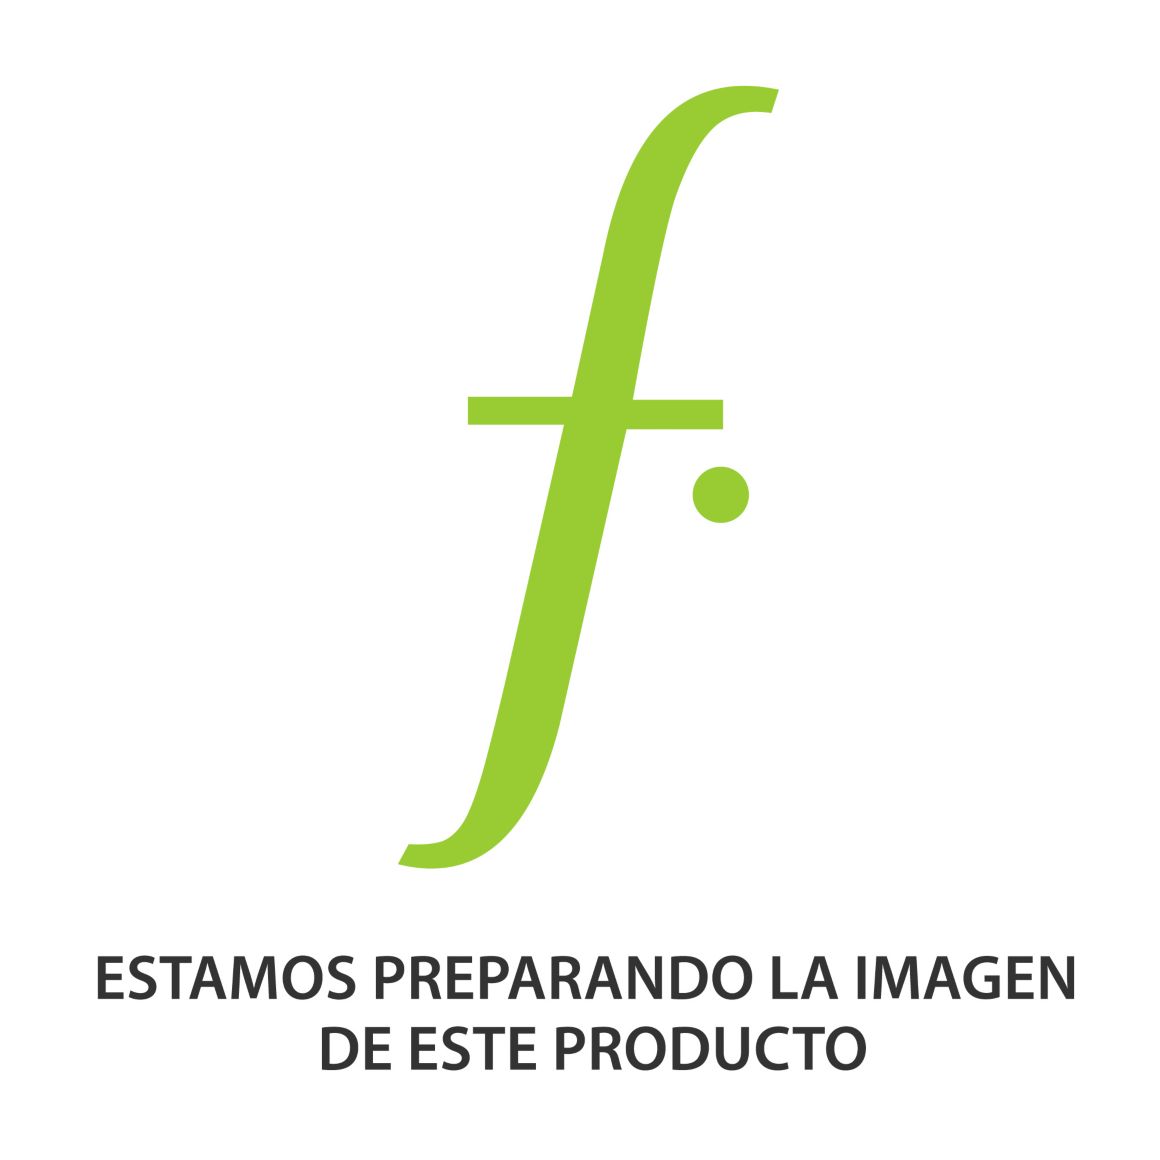 Fujifilm Instax Mini 9 Cámara instantánea fotografía análoga impresión fotografías